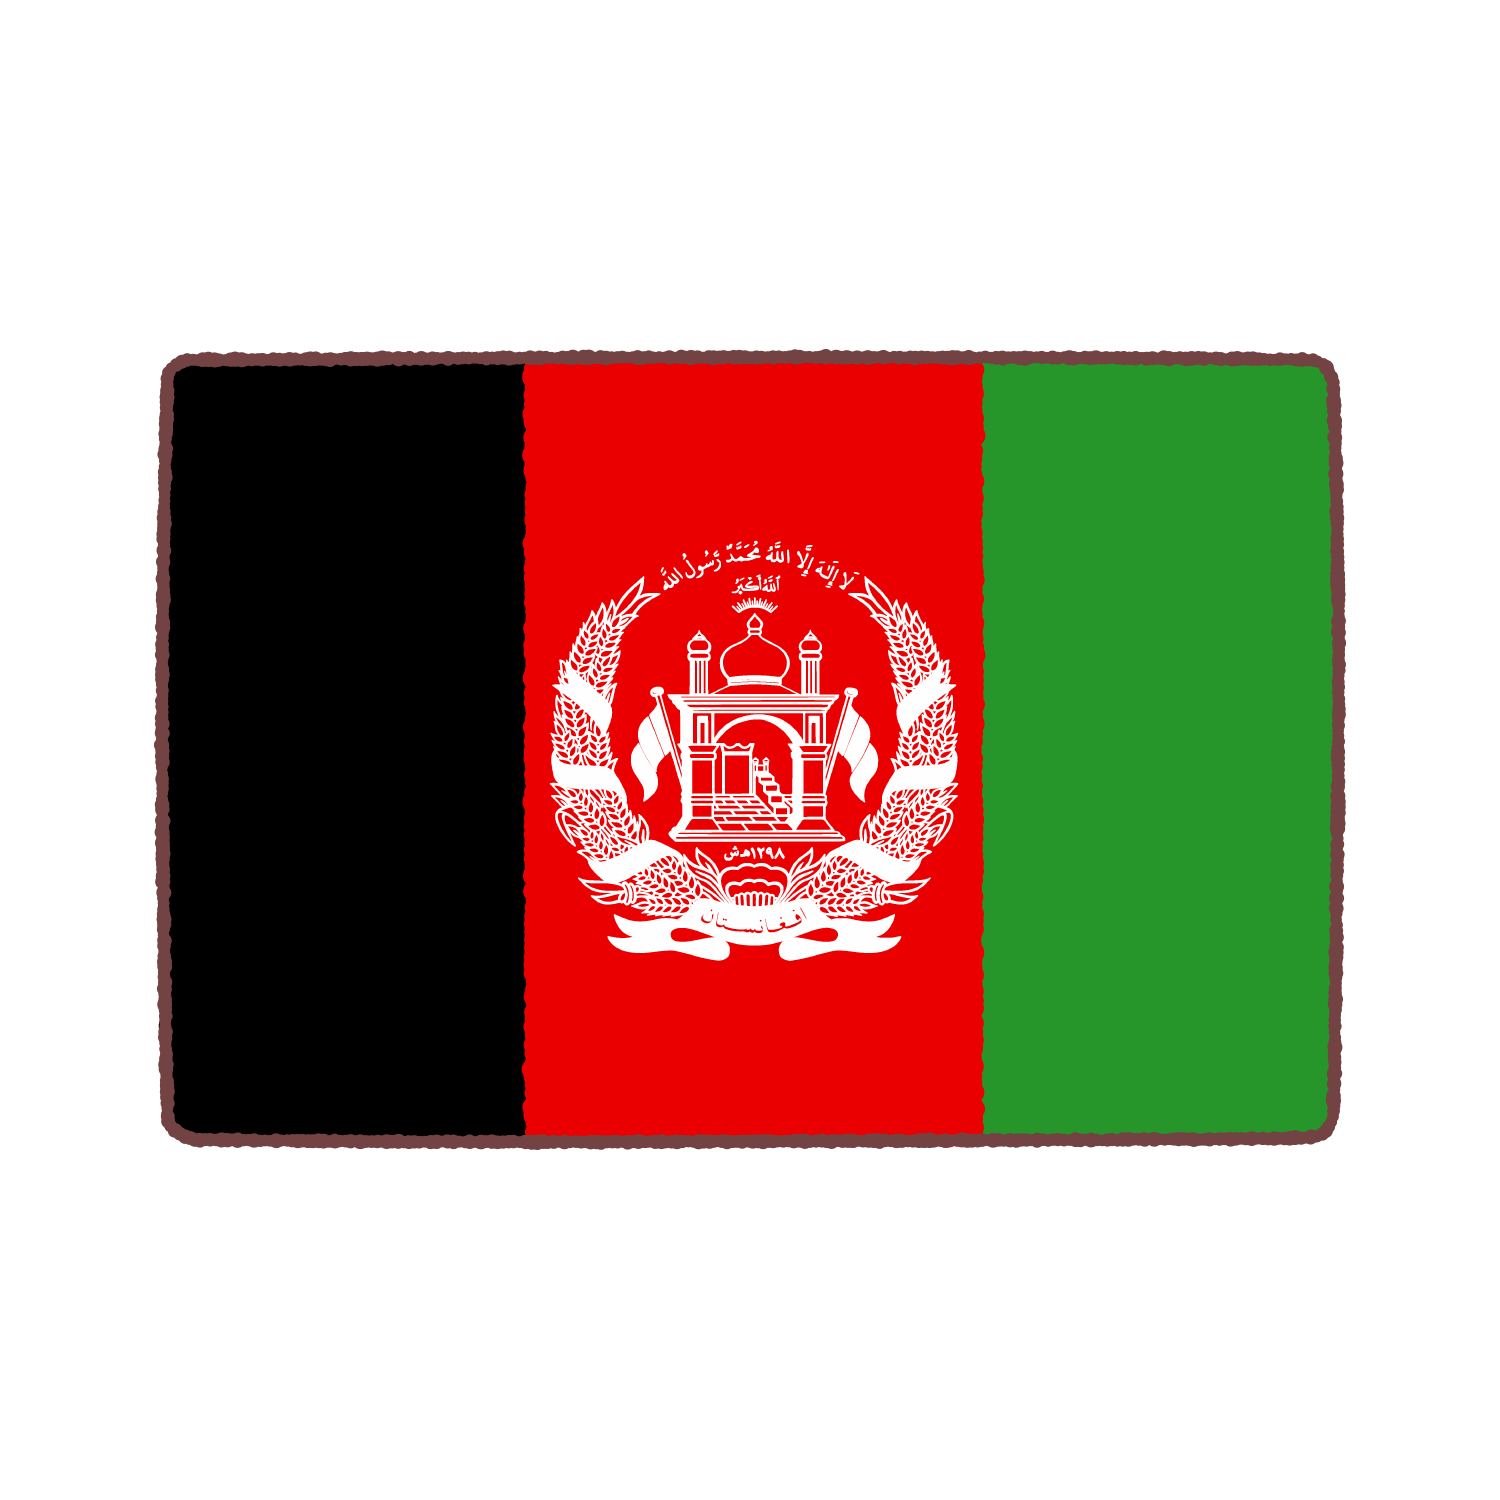 アフガニスタン国旗のイラスト